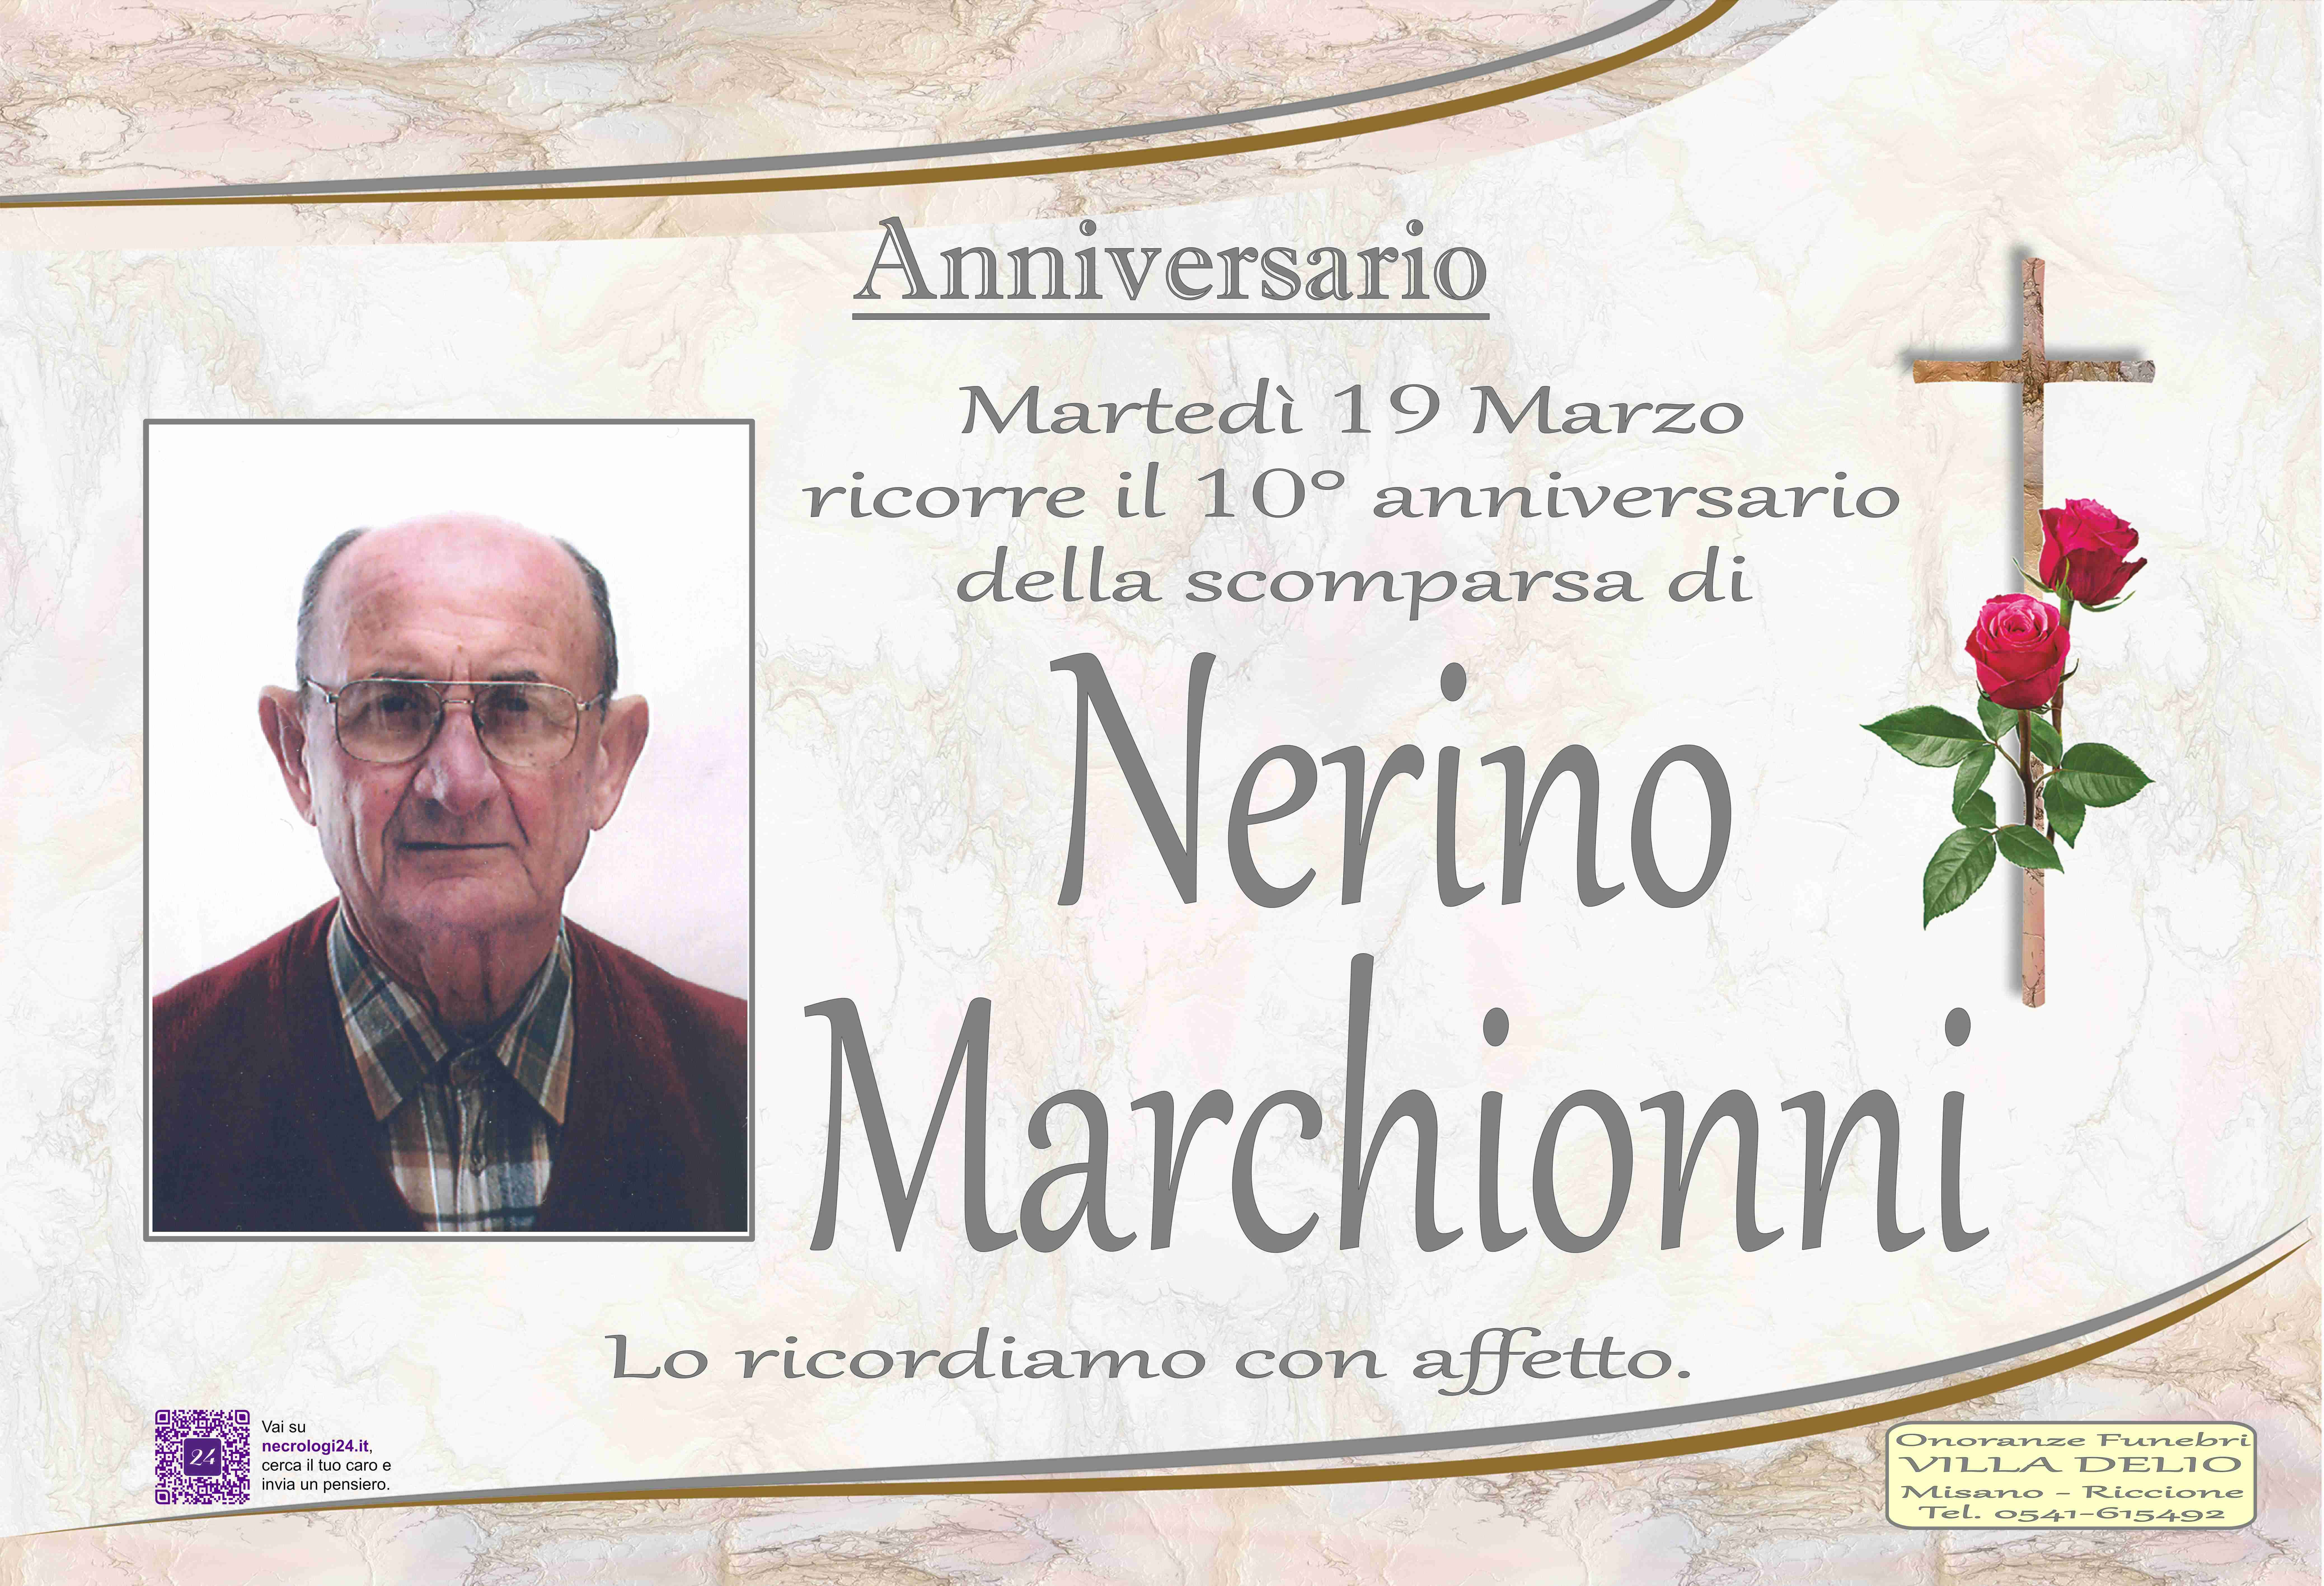 Nerino Marchionni